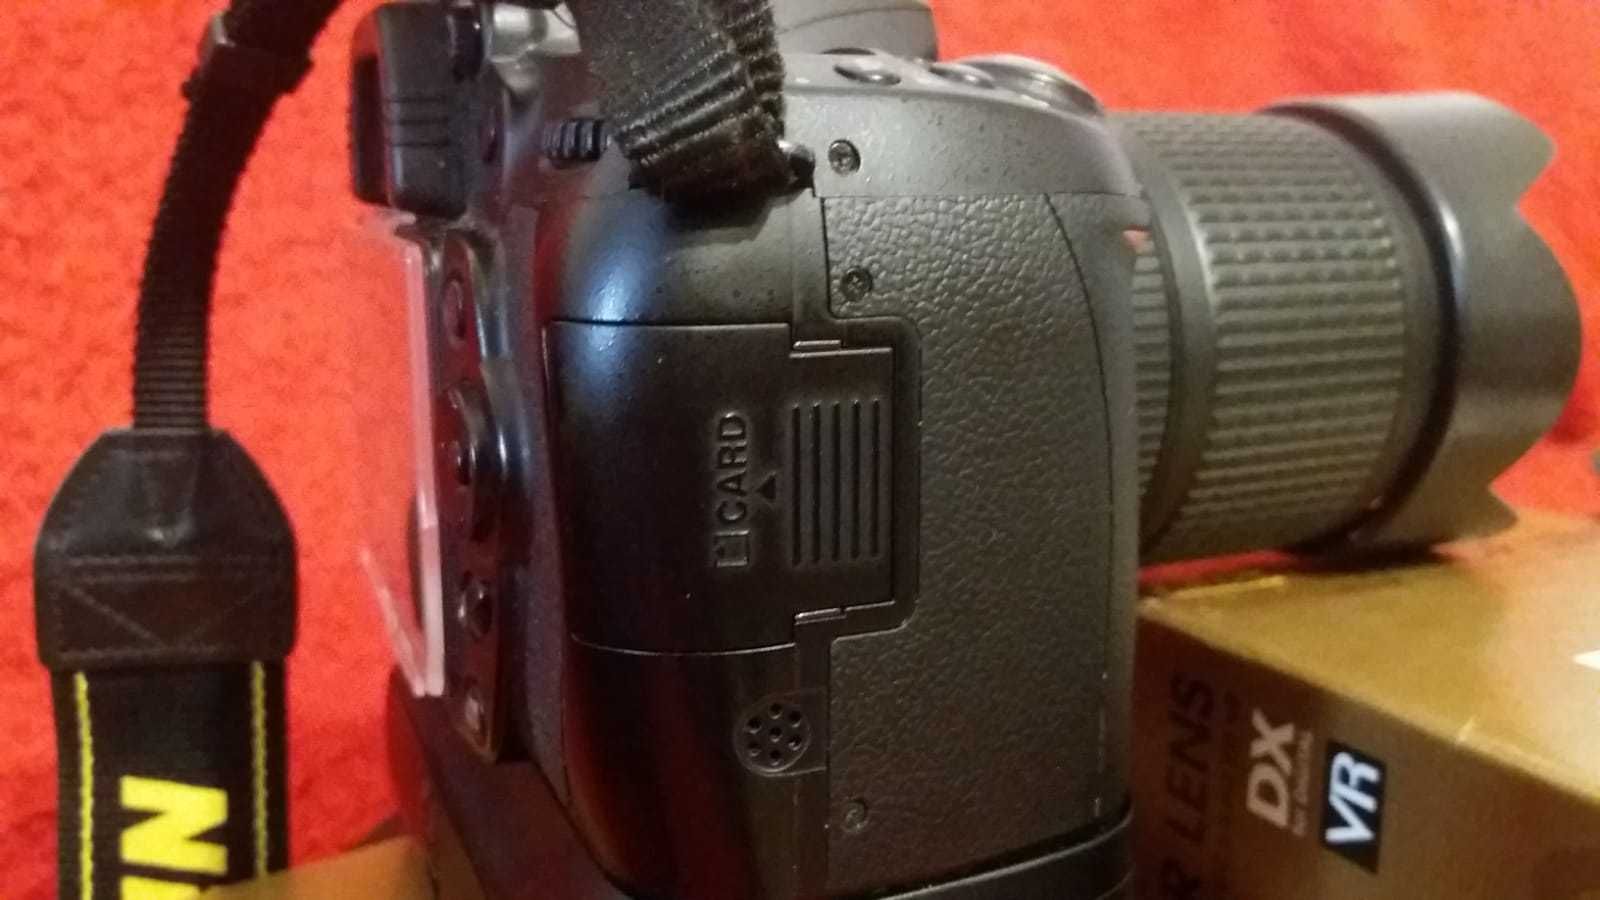 Nikon D90 impecabil 30.018 cadre + grip + alte accesorii Nikon